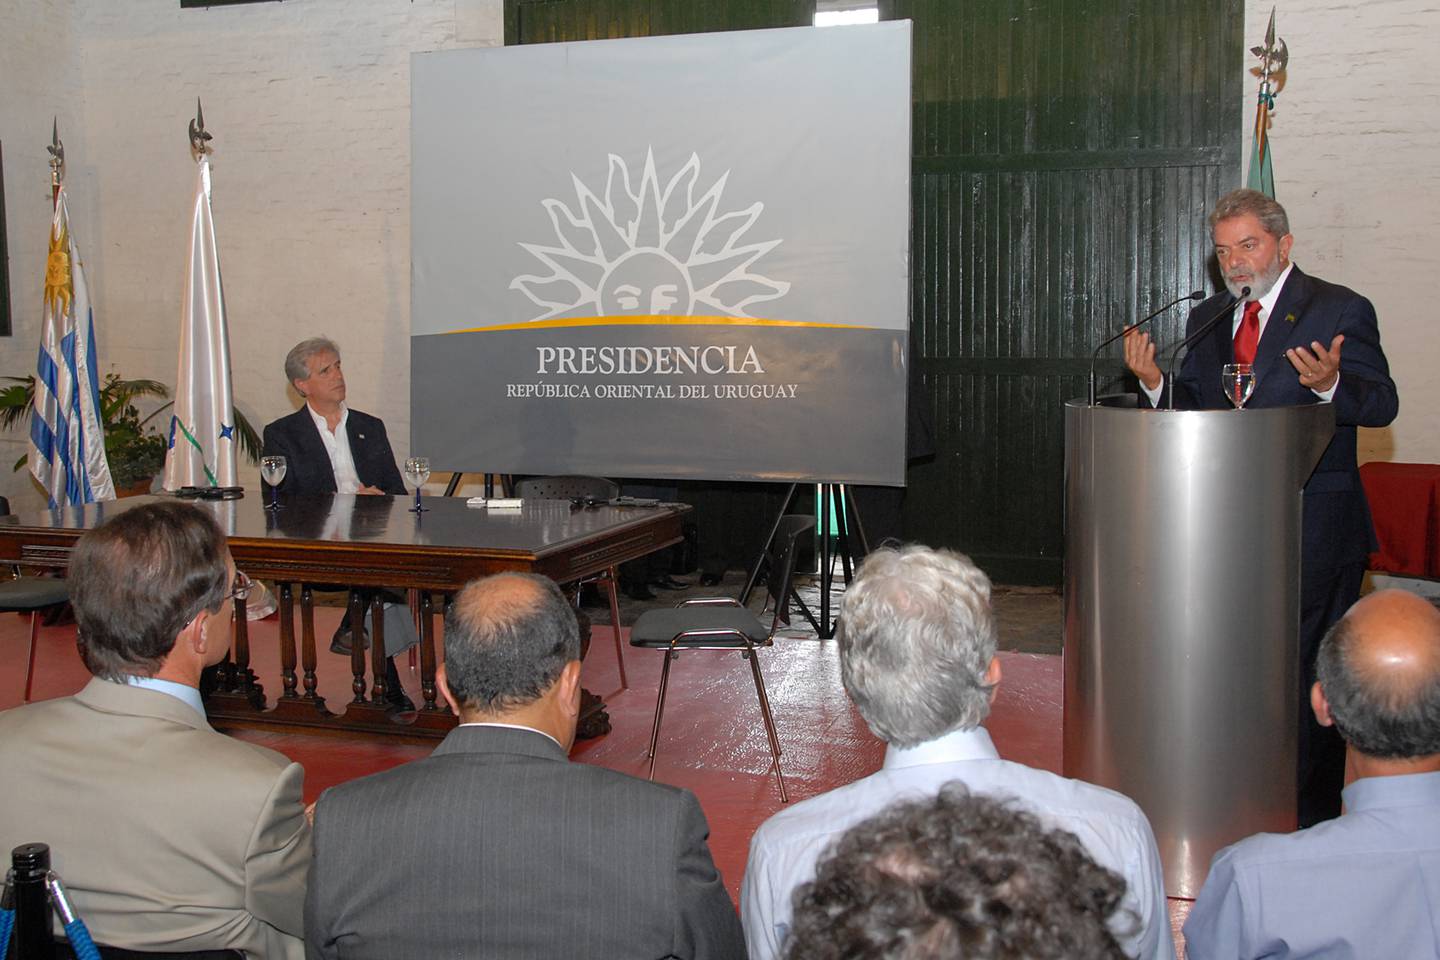 El presidente brasileño Luiz Inácio Lula da Silva brinda una declaración ante los medios durante una visita a Uruguay en febrero de 2007 y ante la mirada de Tabaré Vázquez. Fotografía: Presidencia de la República.dfd